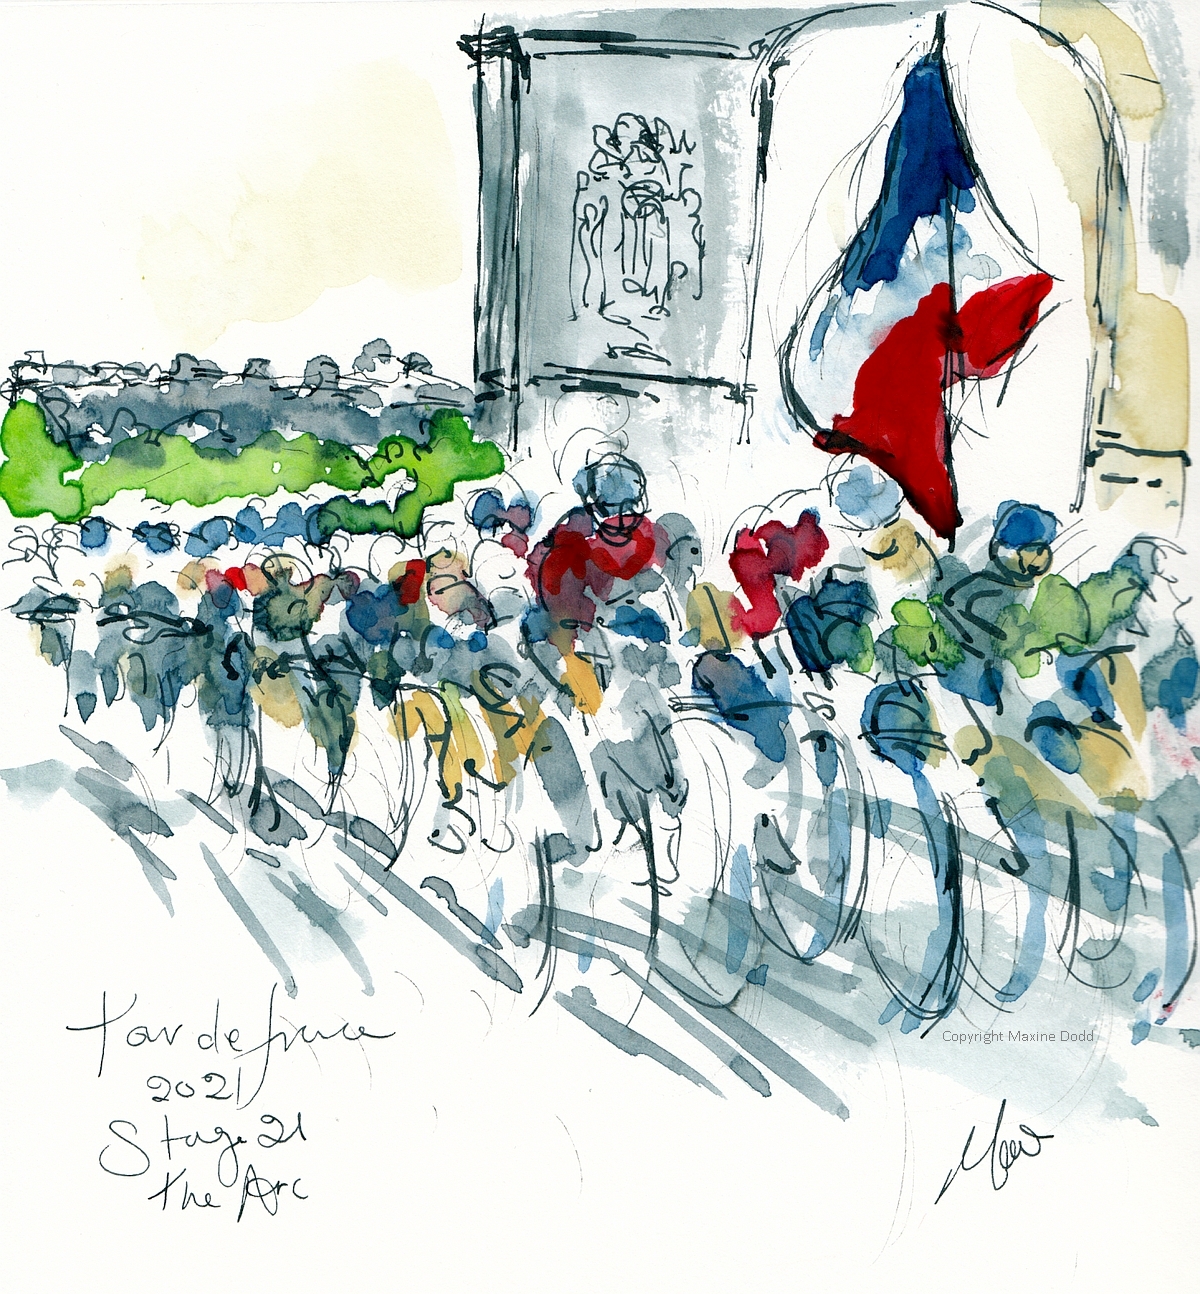 Tour de France 2021 - Stage 21 - The Arc, original watercolour by Maxine Dodd